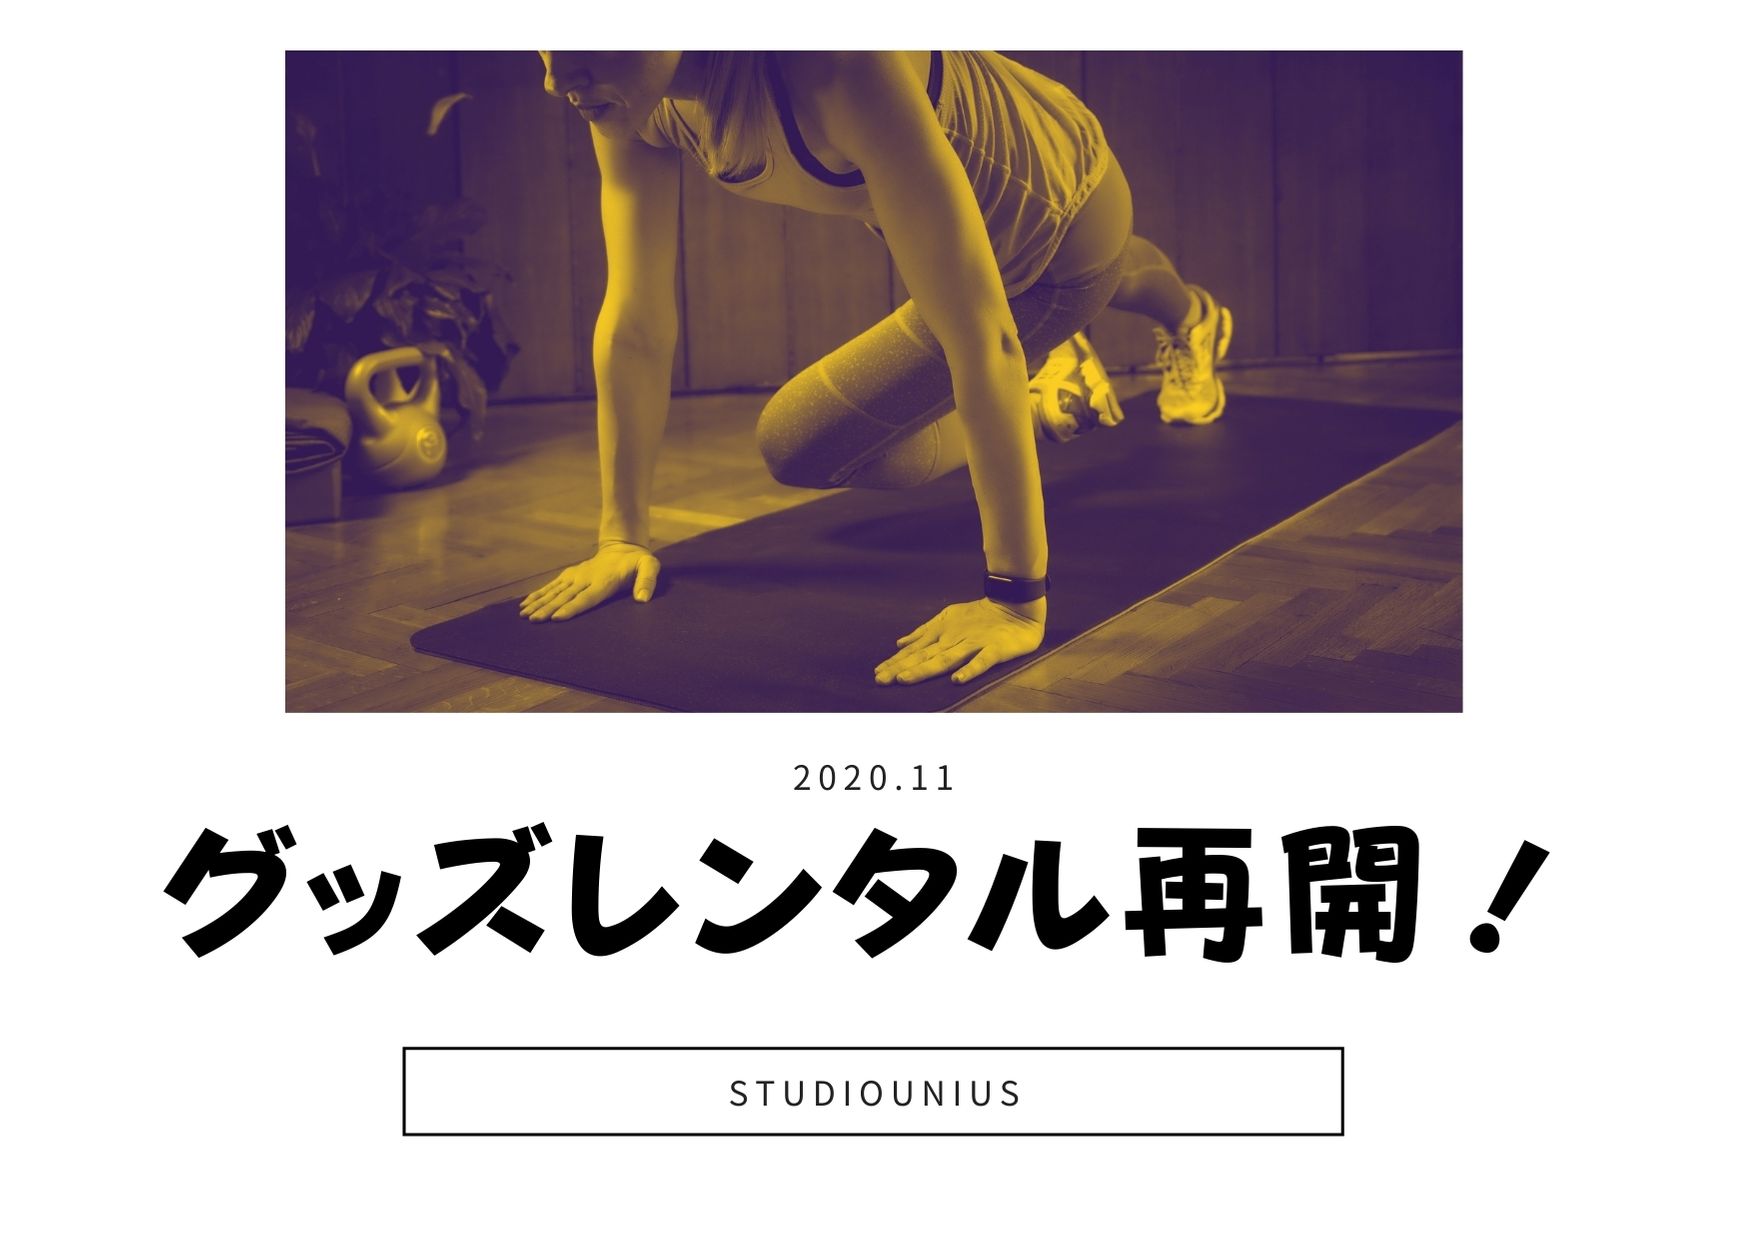 レンタル品再開のお知らせ 渋谷1分のレンタルスタジオ ユニアス 500円からの格安ダンススタジオ